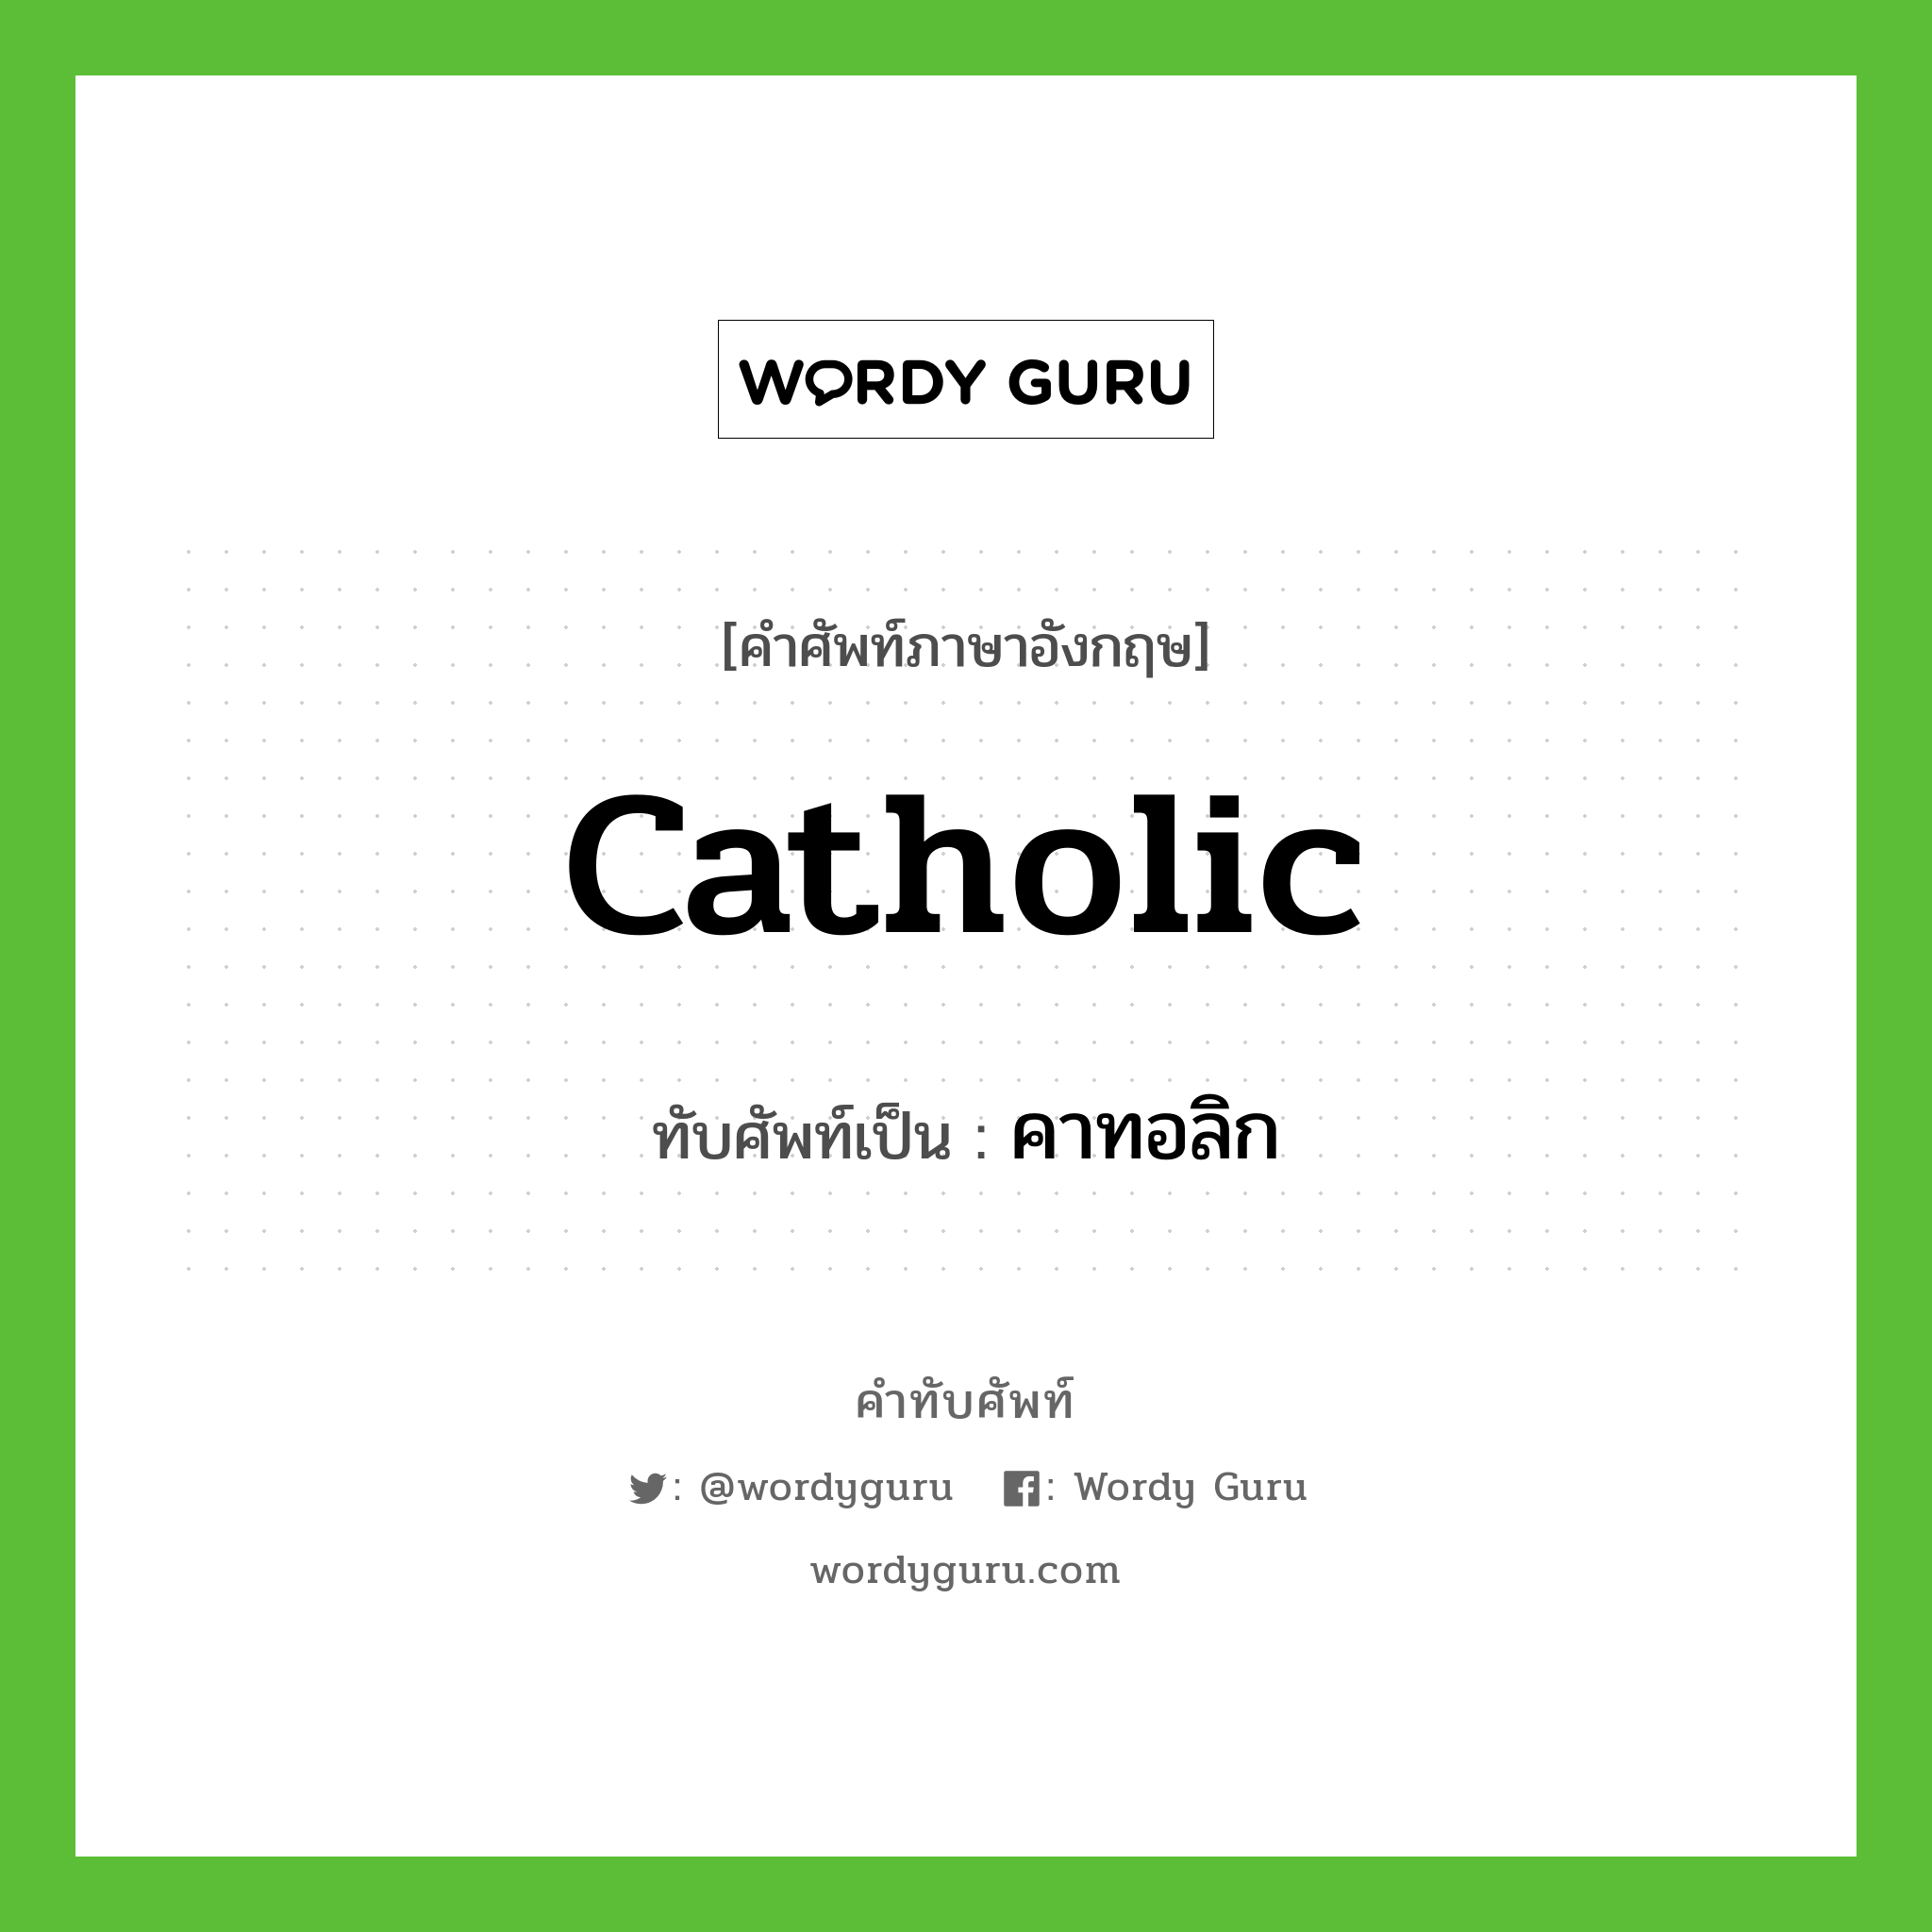 คาทอลิก เขียนอย่างไร?, คำศัพท์ภาษาอังกฤษ คาทอลิก ทับศัพท์เป็น Catholic